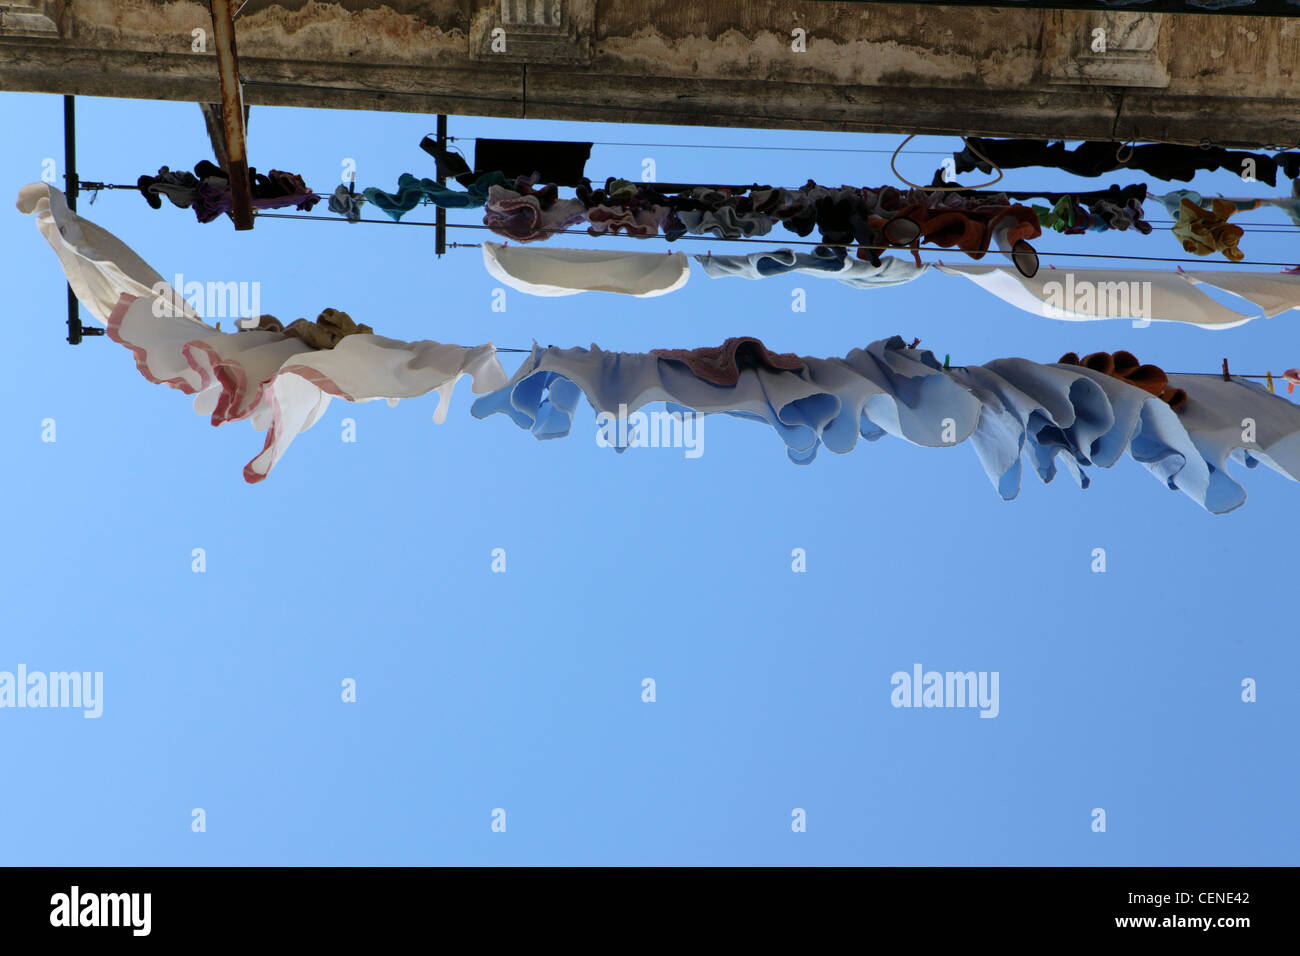 Wäscheleine mit Klamotten drauf, Wäscherei, Blick zum blauen Himmel, Lissabon, Portugal Stockfoto